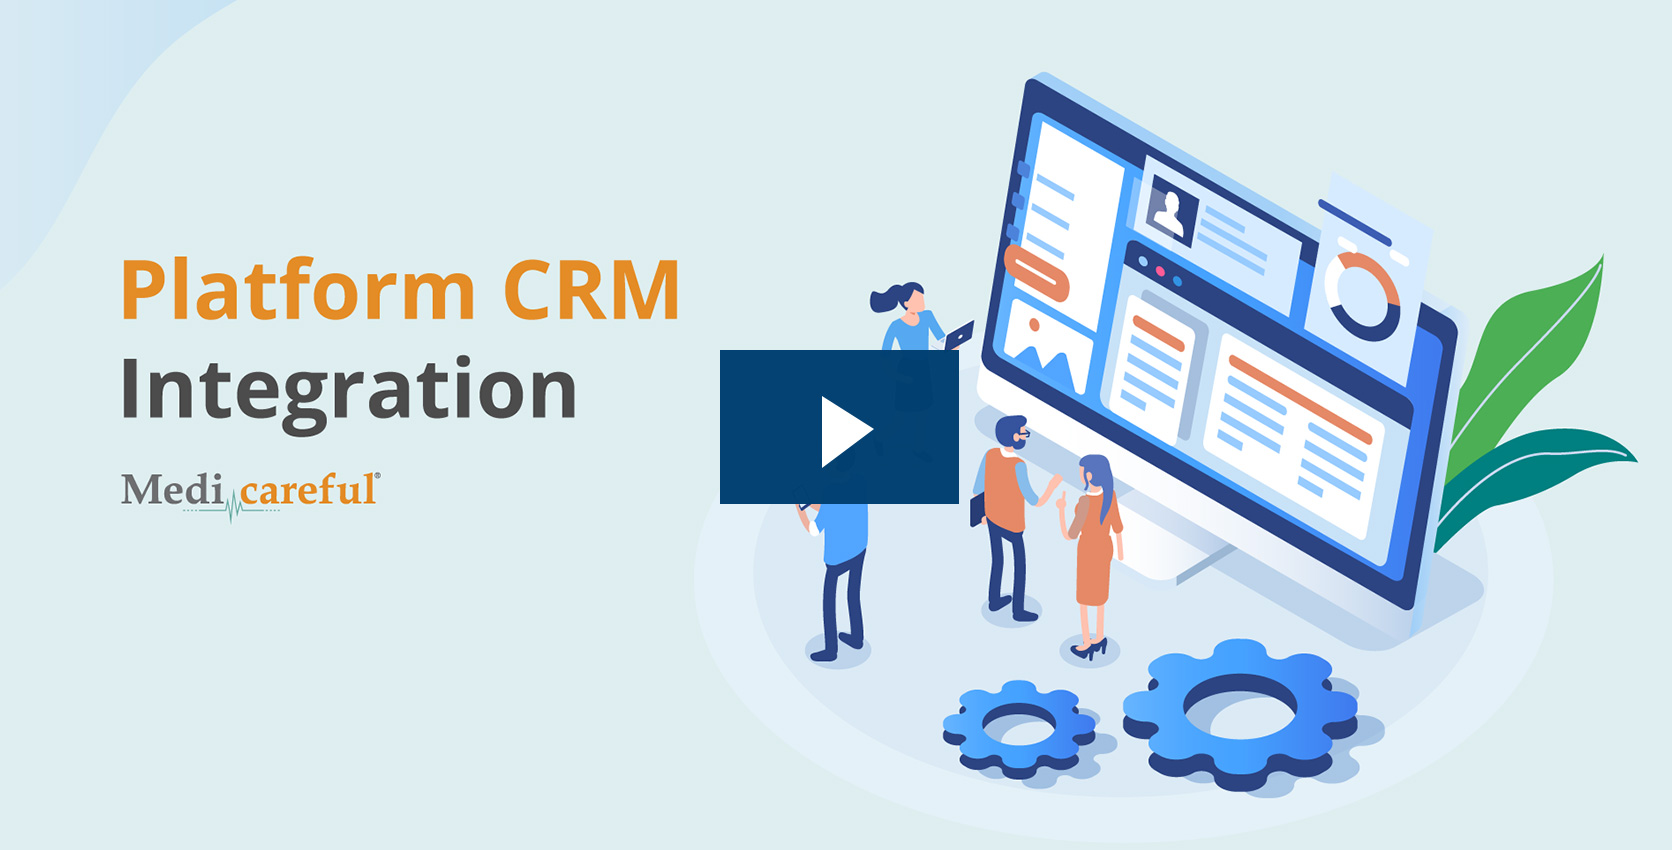 Platform CRM Integration